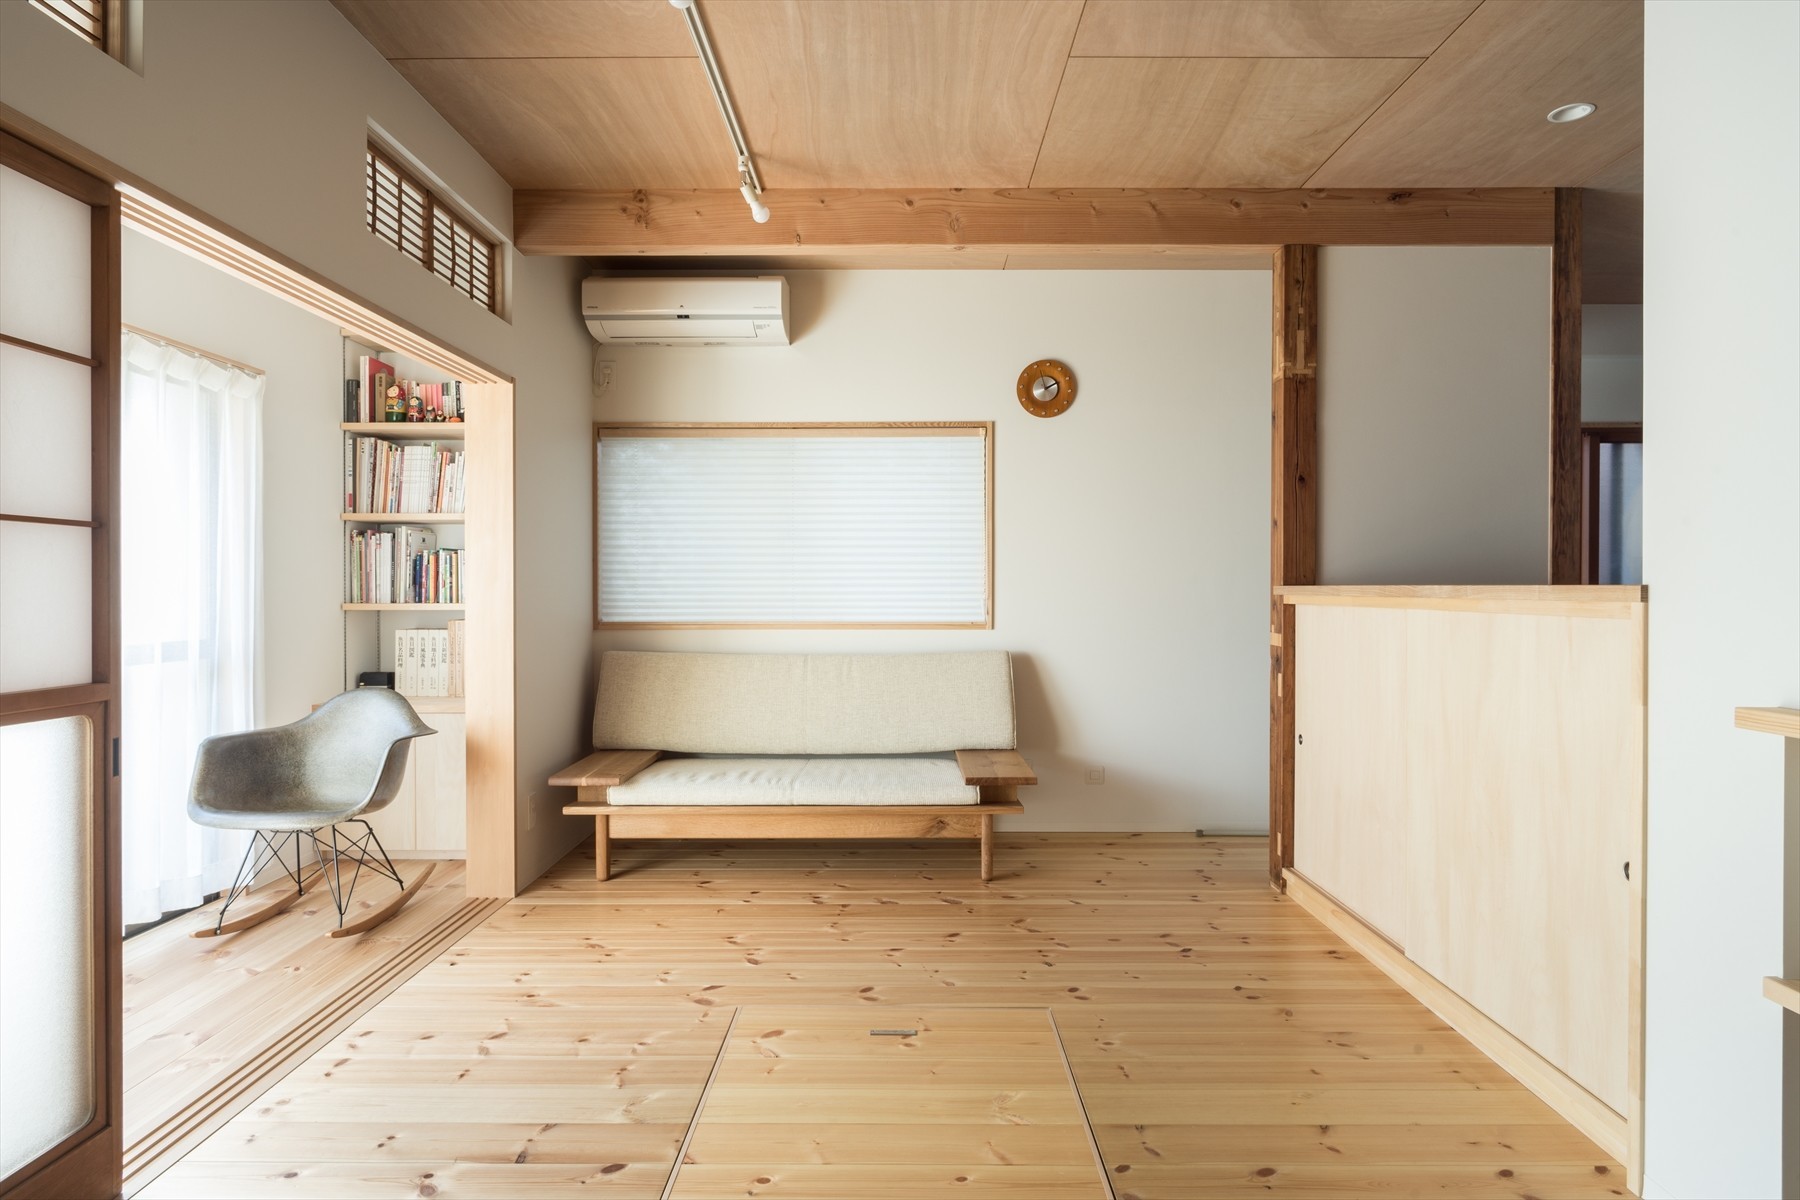 １階リビング。広々とした縁側を設け、読書をしたり多目的に使うことができる | 横須賀市久里浜・戸建2世帯リノベーション